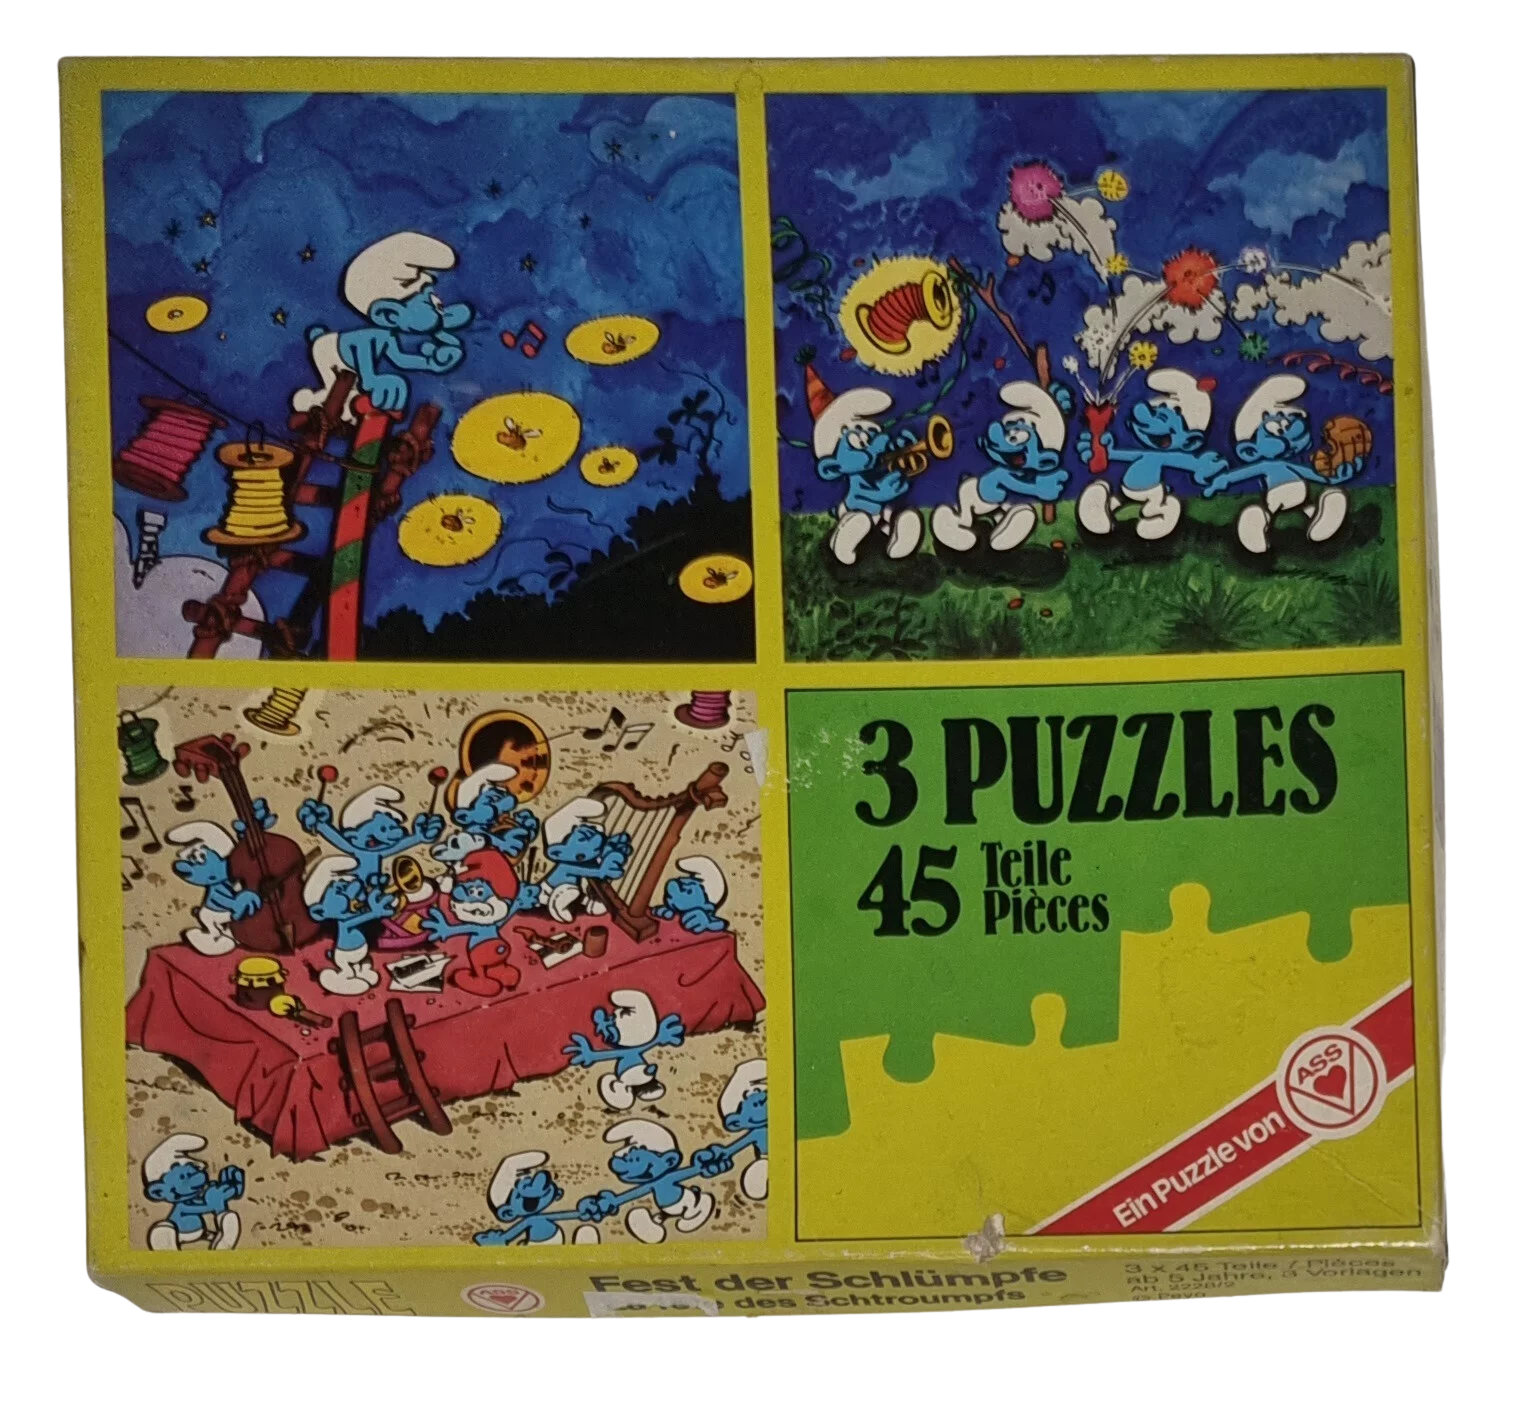 ASS Tiere der Wildnis 3 Puzzle 3 x 45 Teile Fest der Schlümpfe 2228/3 